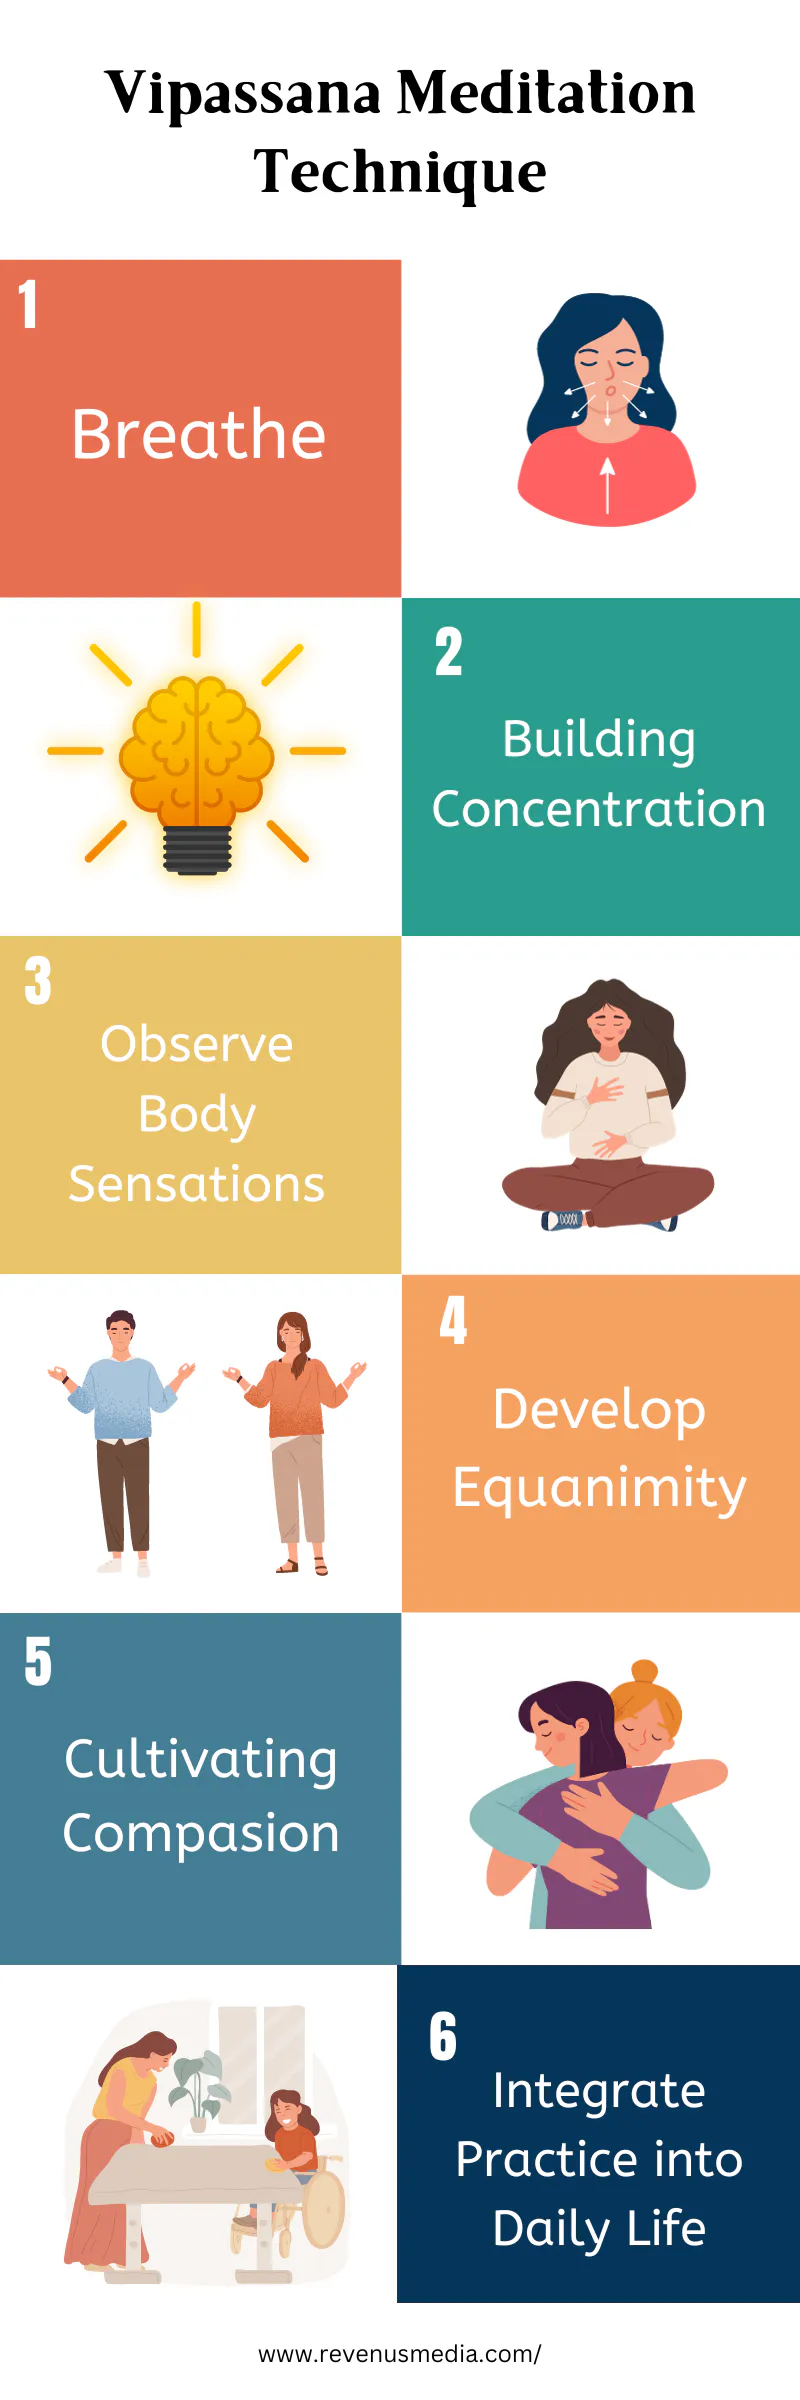 Vipassana Meditation Technique infographic